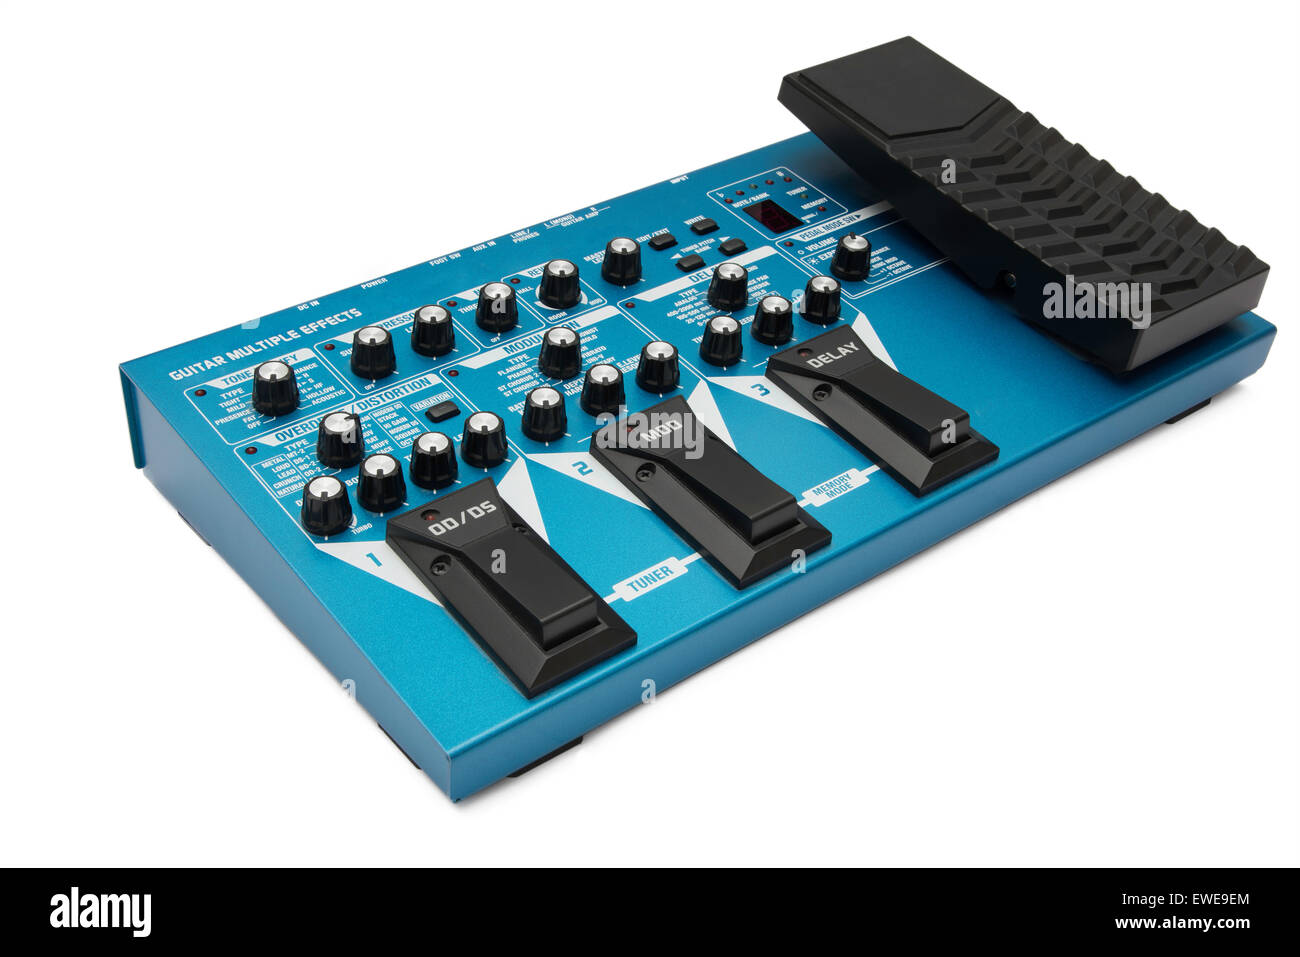 Blau, Stock-basierte multieffektprozessor Für Gitarren gegen einen weißen Hintergrund isoliert Stockfoto